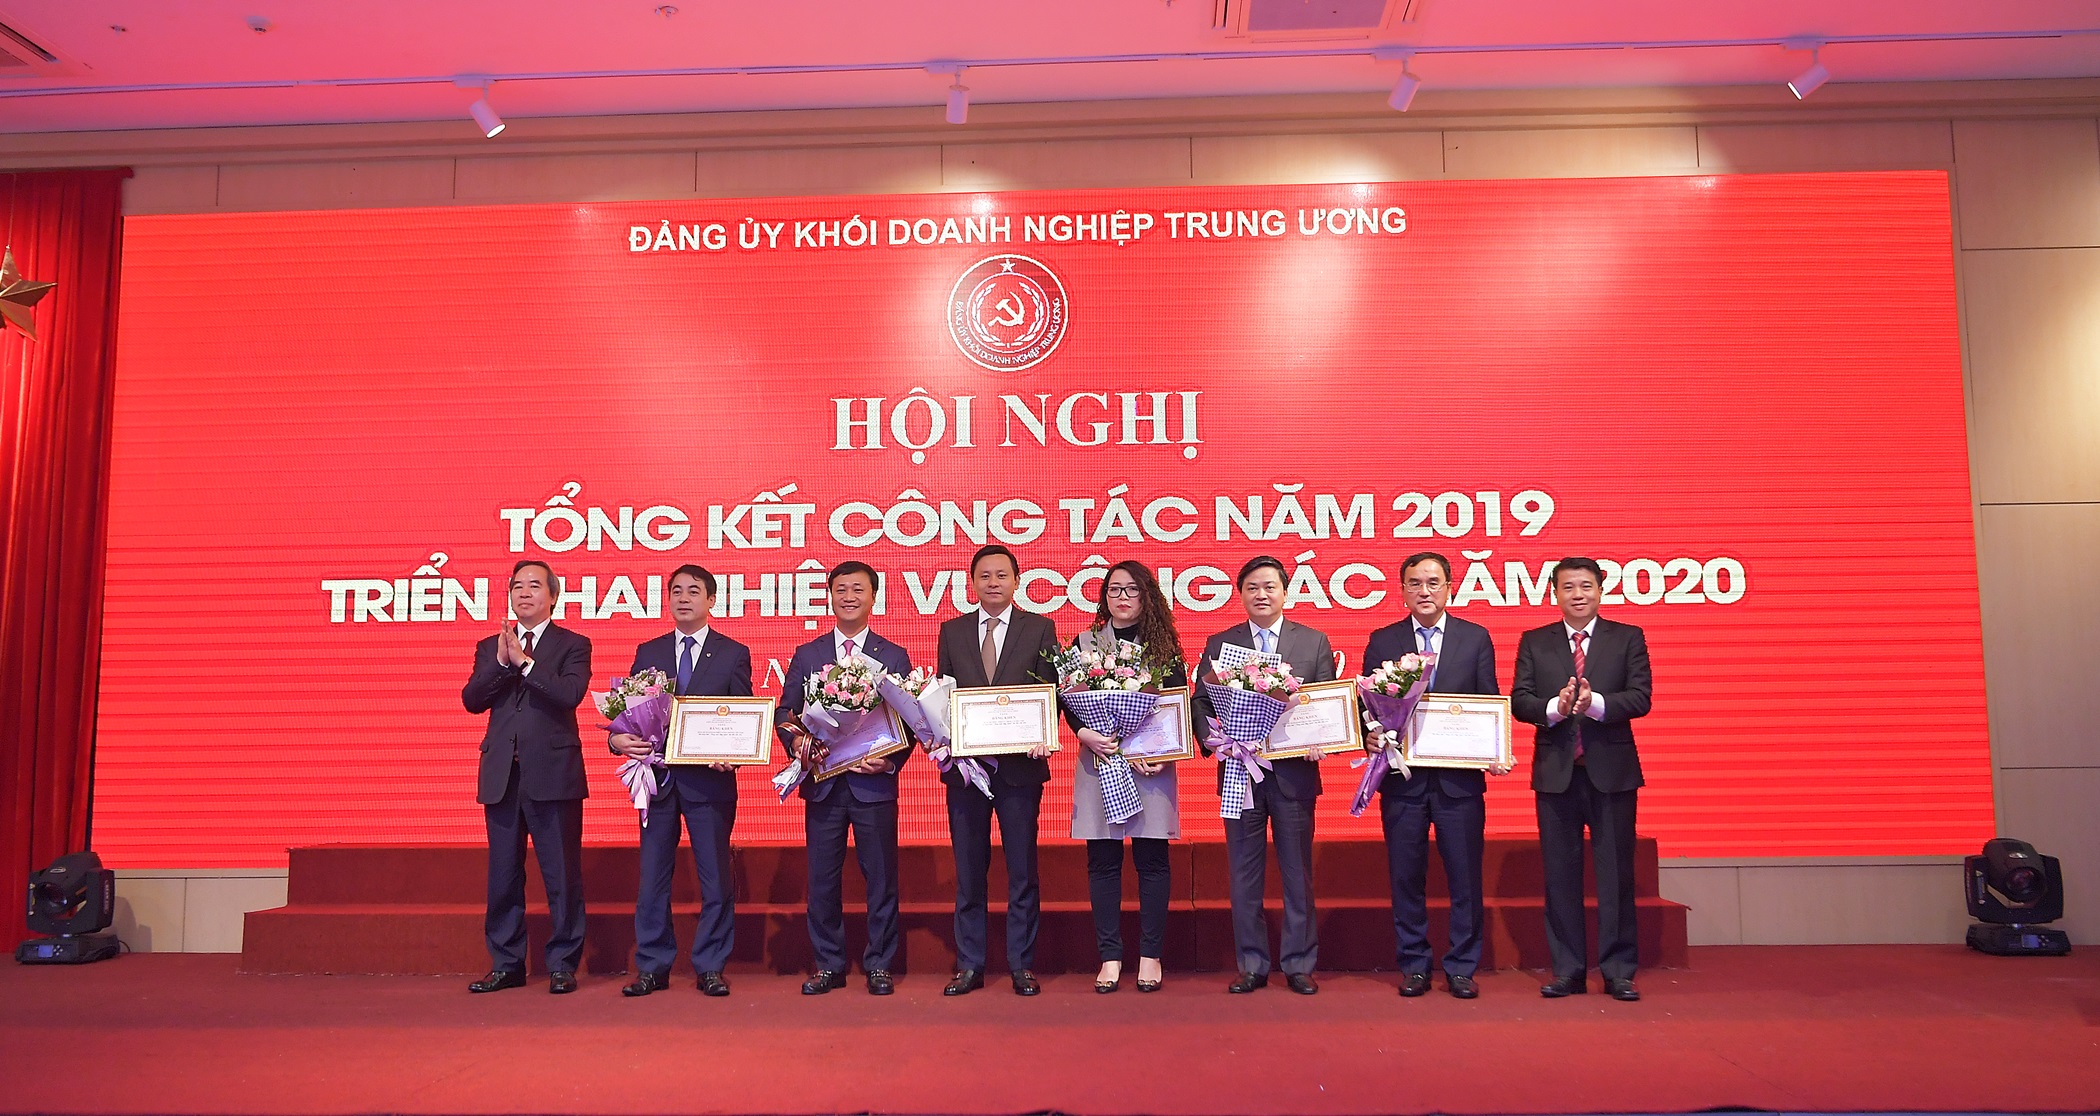 Đảng ủy Khối Doanh nghiệp Trung ương tặng bằng khen “Đảng bộ trong sạch – vững mạnh, tiêu biểu năm 2019” cho Đảng bộ Vietcombank